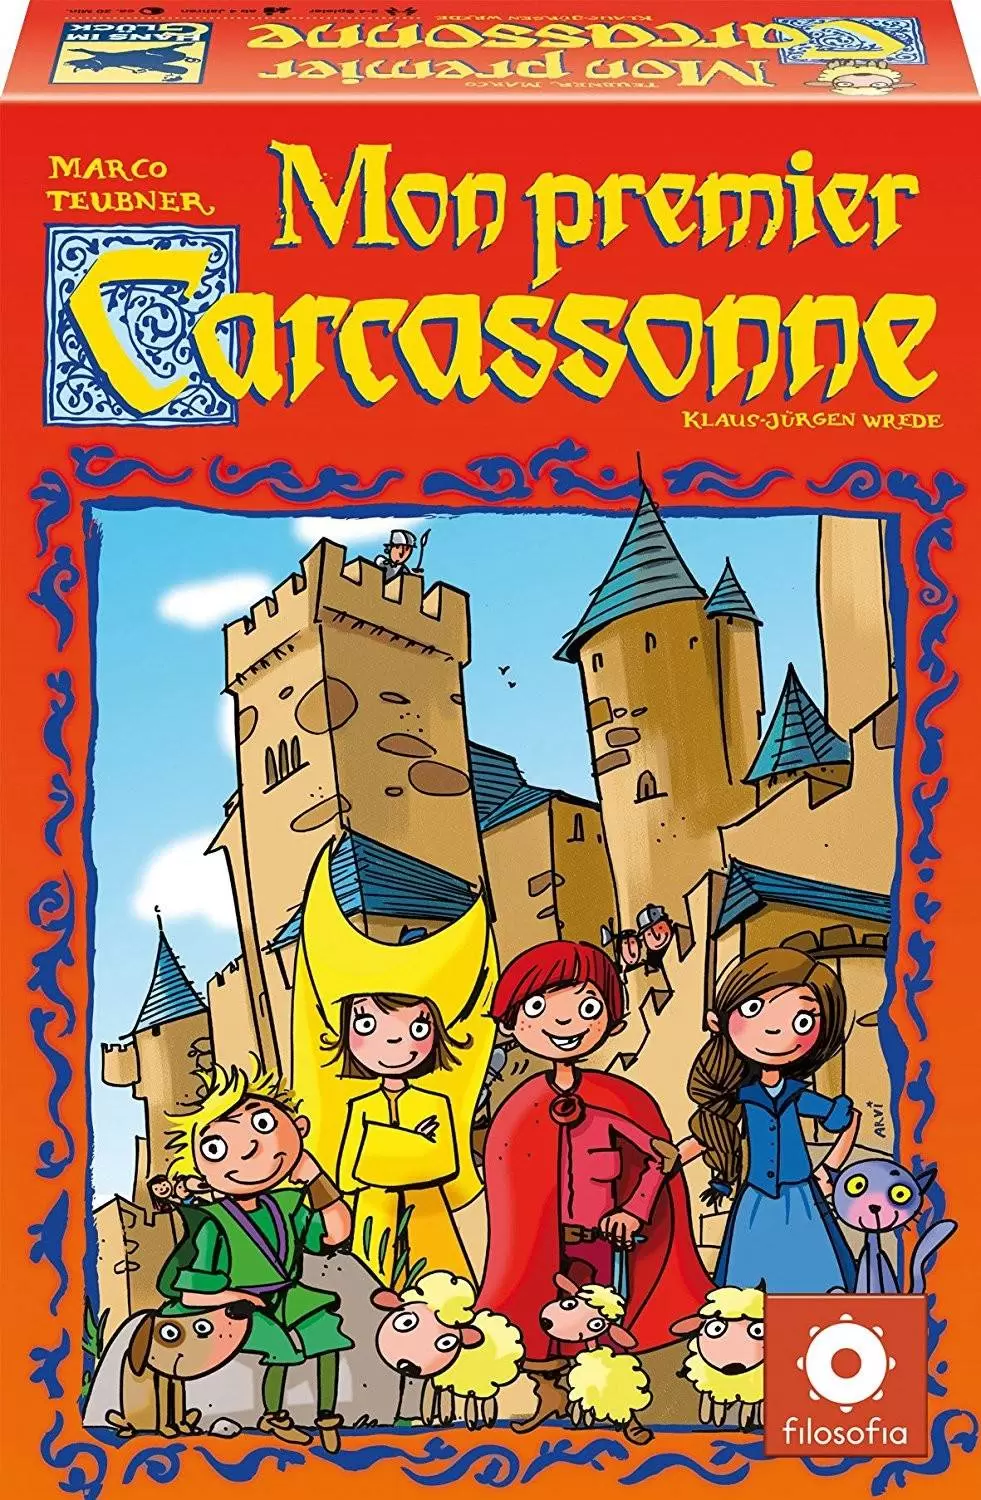 Carcassonne - Mon Premier Carcassonne